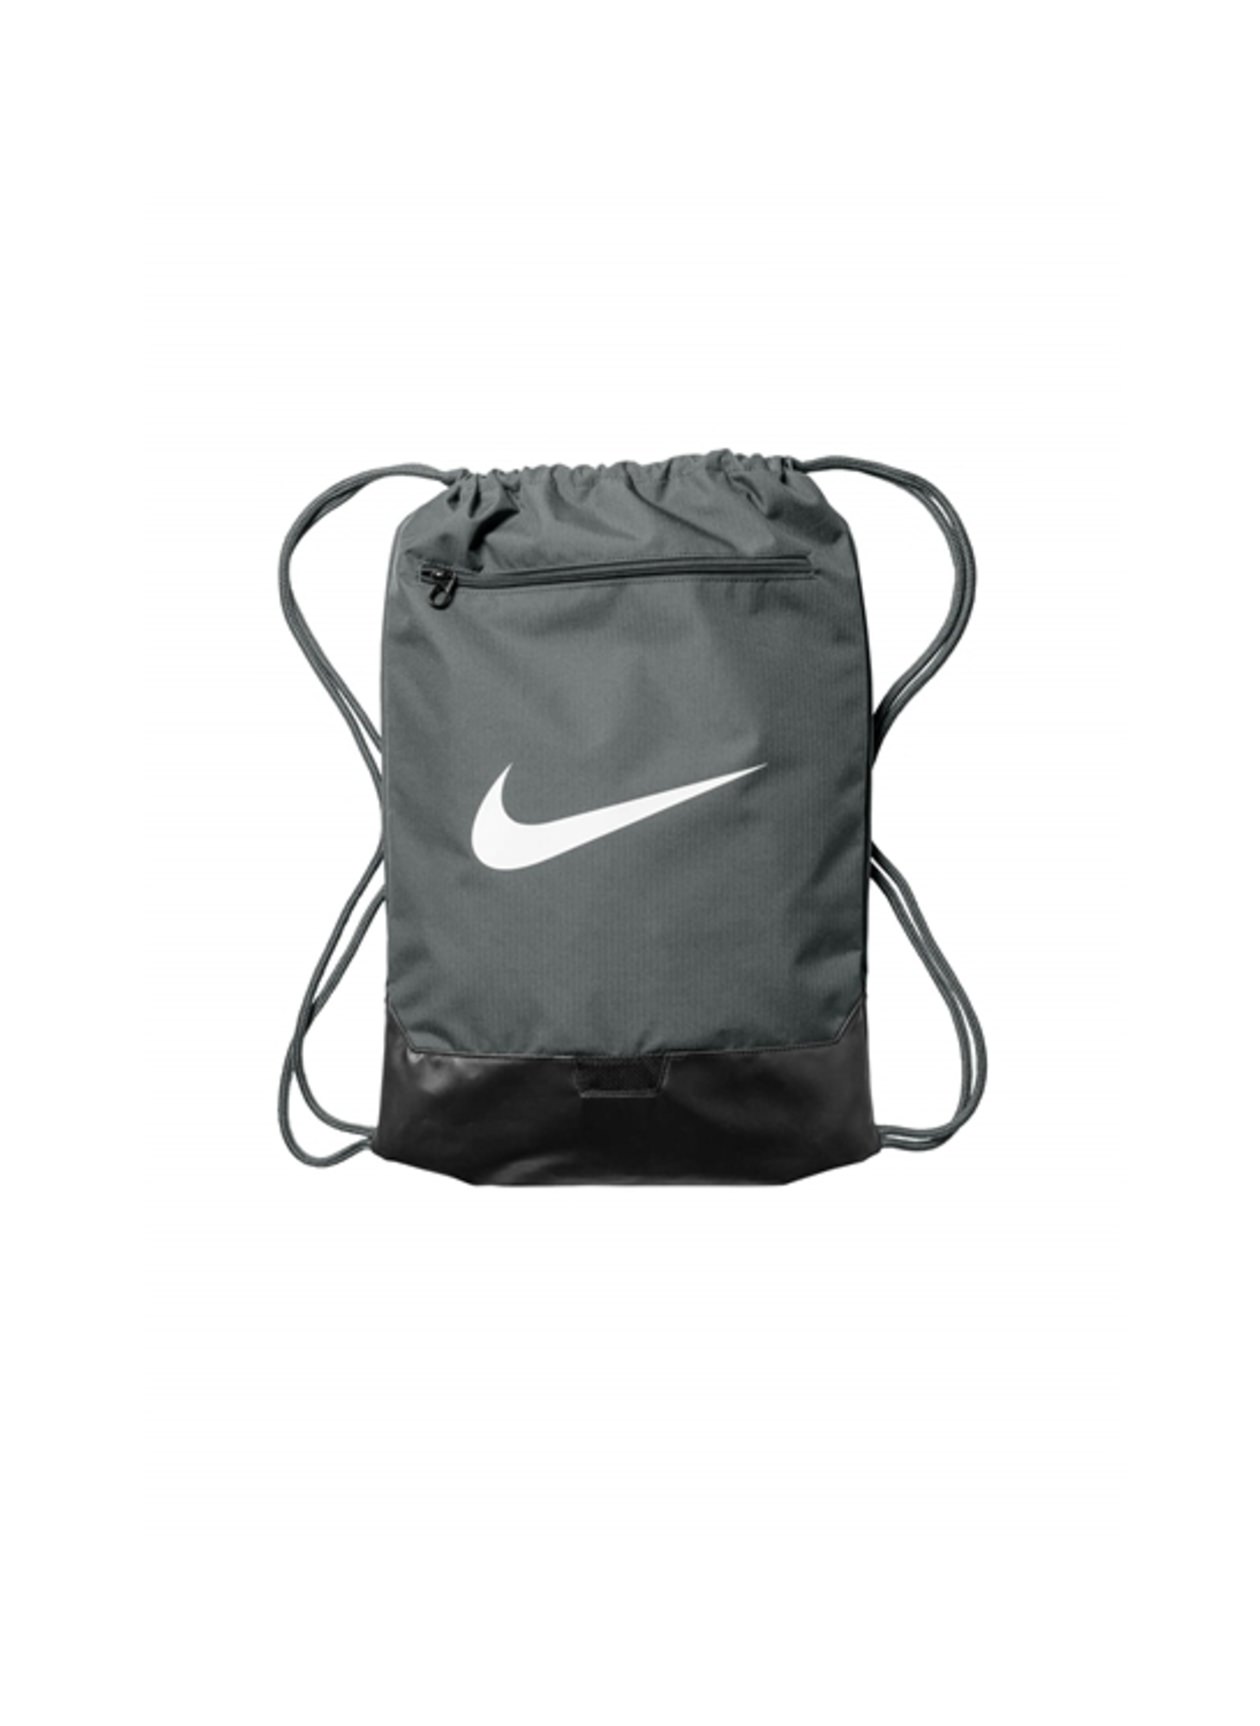 Nike Flint Grey Brasilia Drawstring Pack